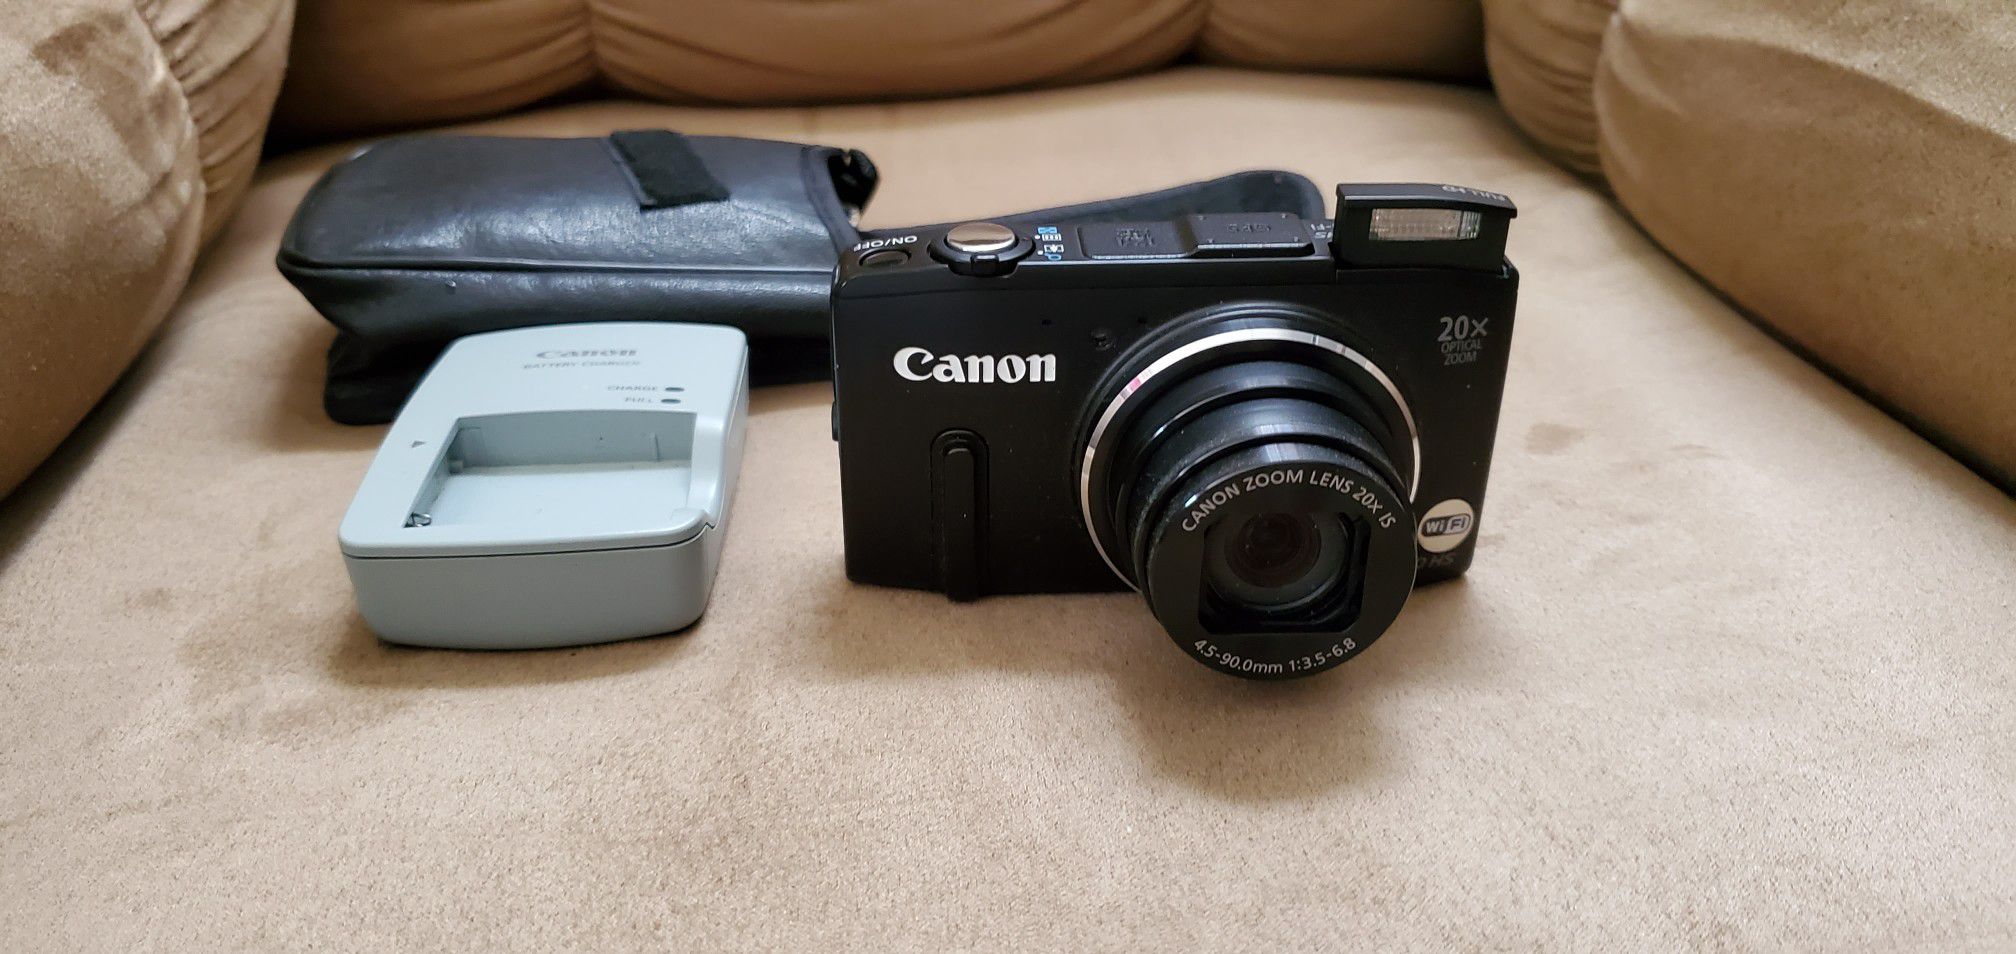 Canon SX280 digital camera